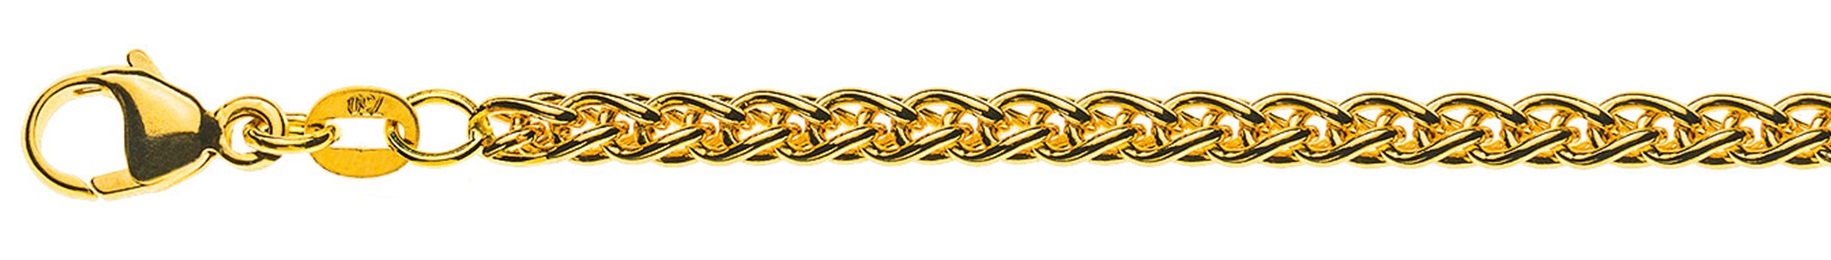 AURONOS Prestige Halskette Gelbgold 18K Zopfkette 50cm 3.3mm